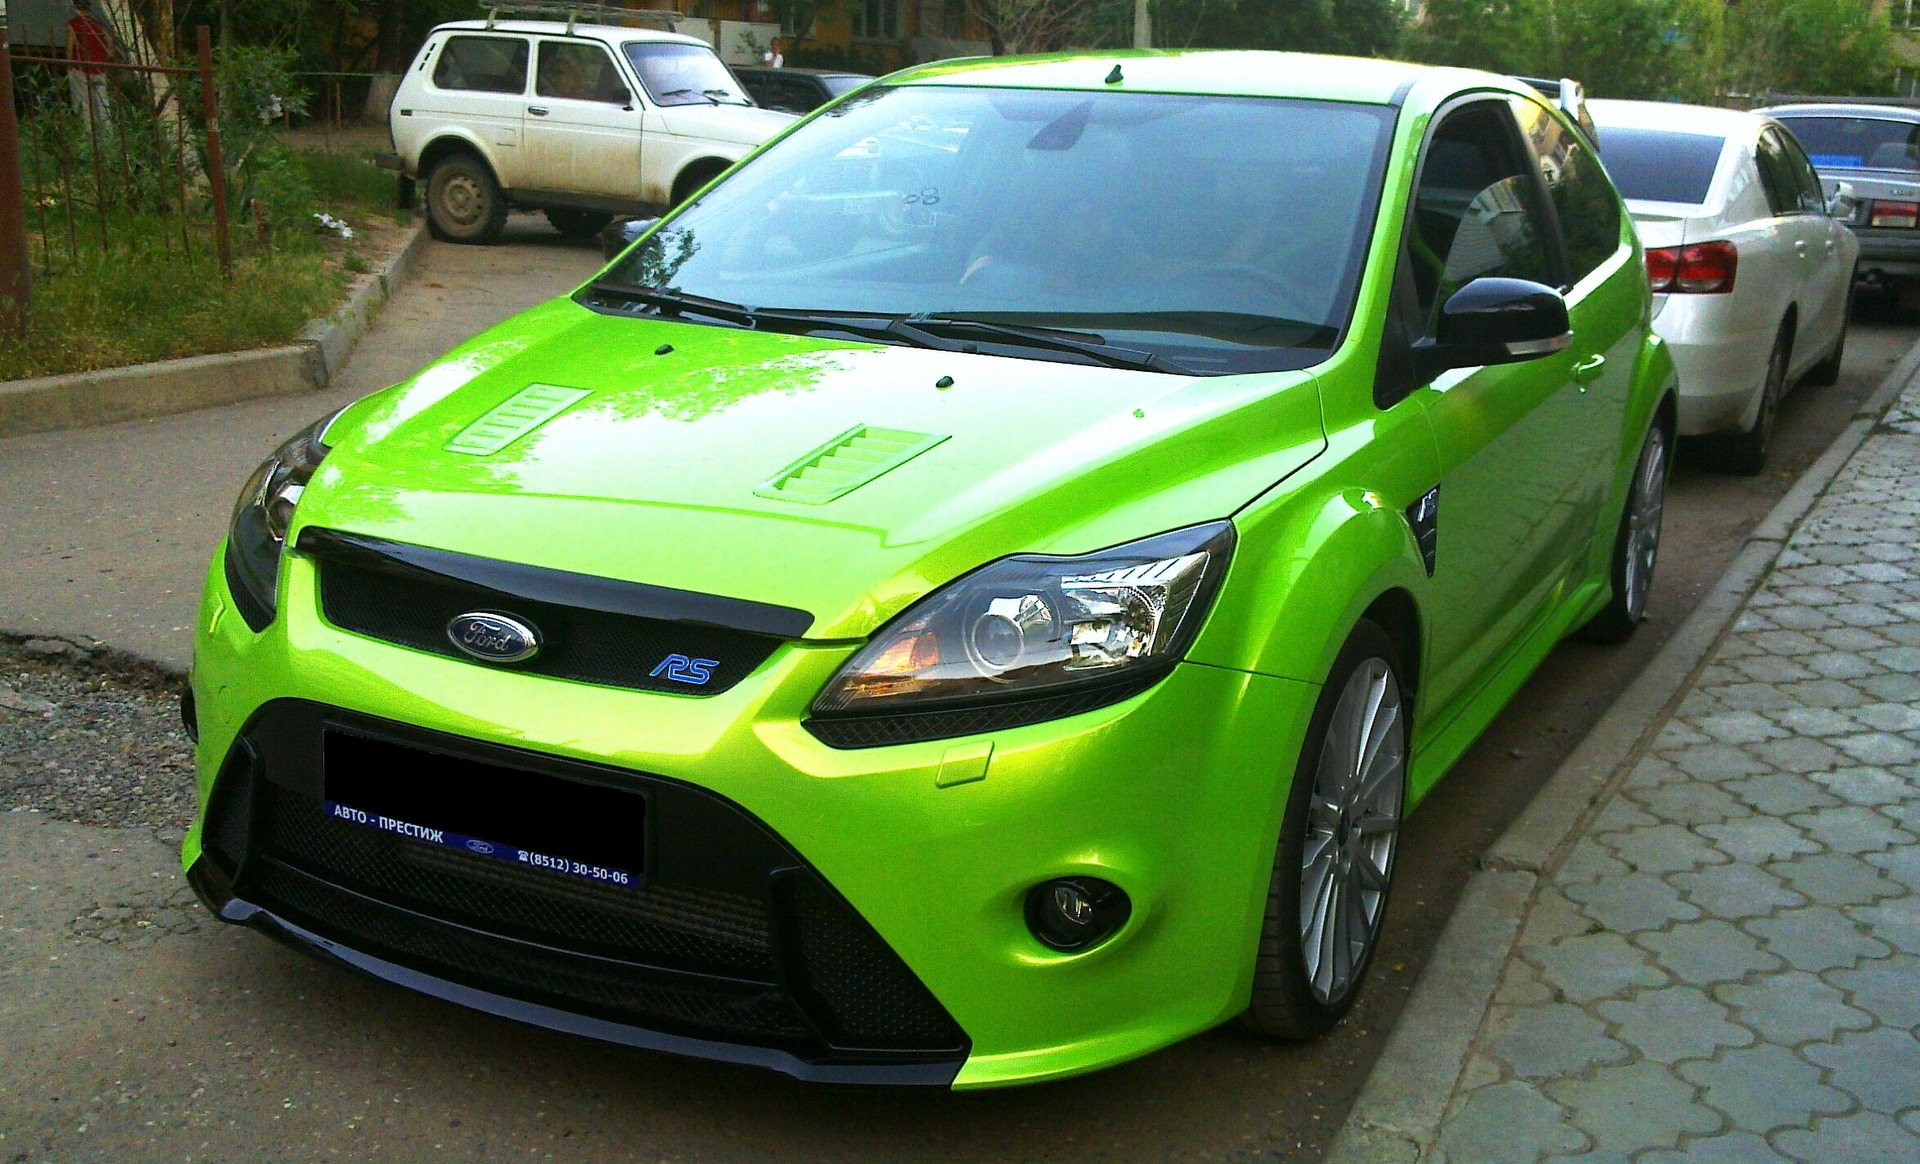 Ford focus цвет. Ford Focus 2 RS зеленый. Форд 2 РС фокус цвет. Ford Focus 2 RS цвета. Фокус 2 РС зелёный.